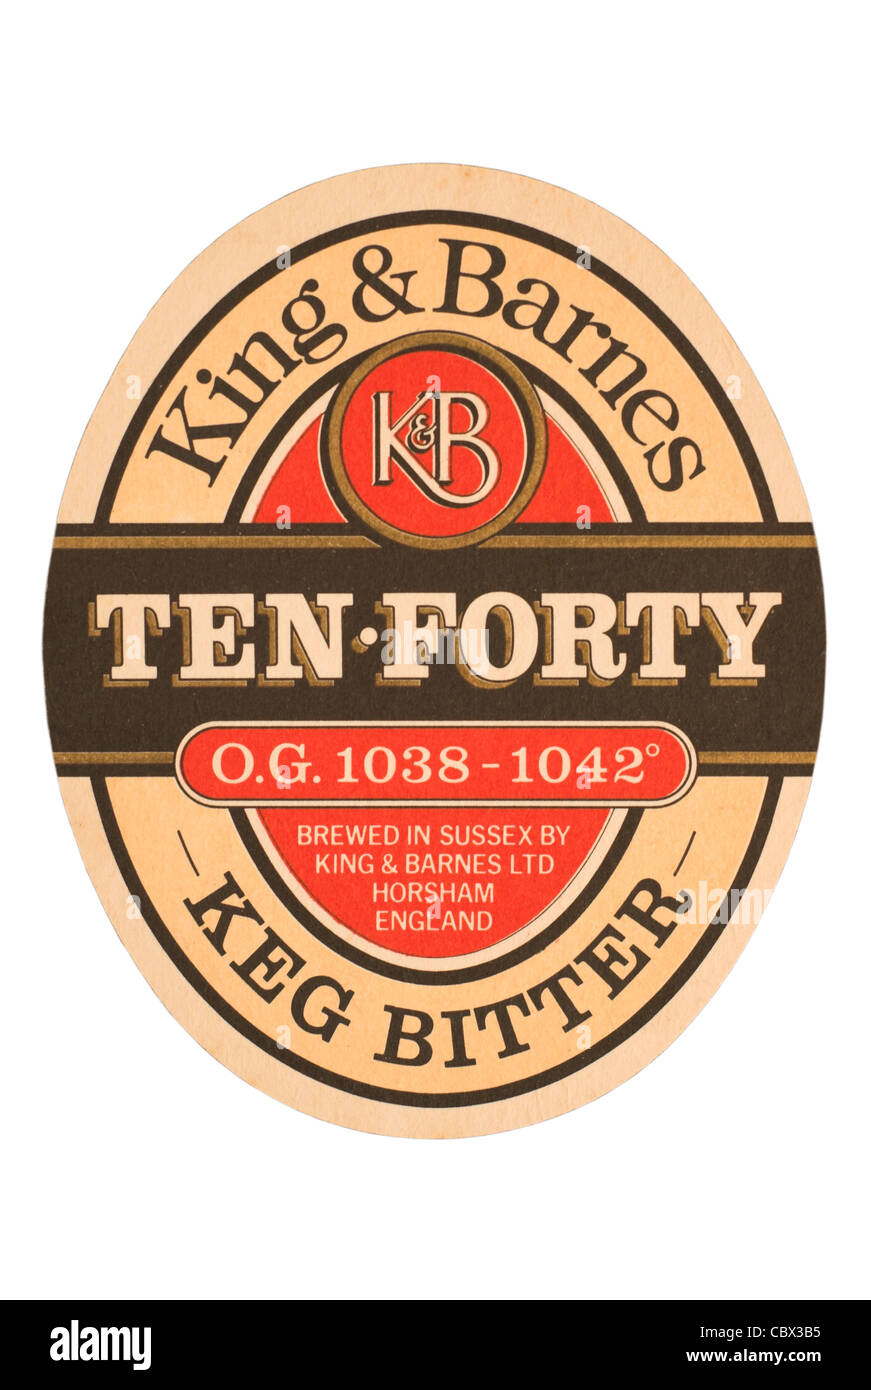 Bierdeckel / Tropf mat - zehn vierzig (Keg Bitter) - König & Barnes ursprünglich von Horsham, England. Stockfoto